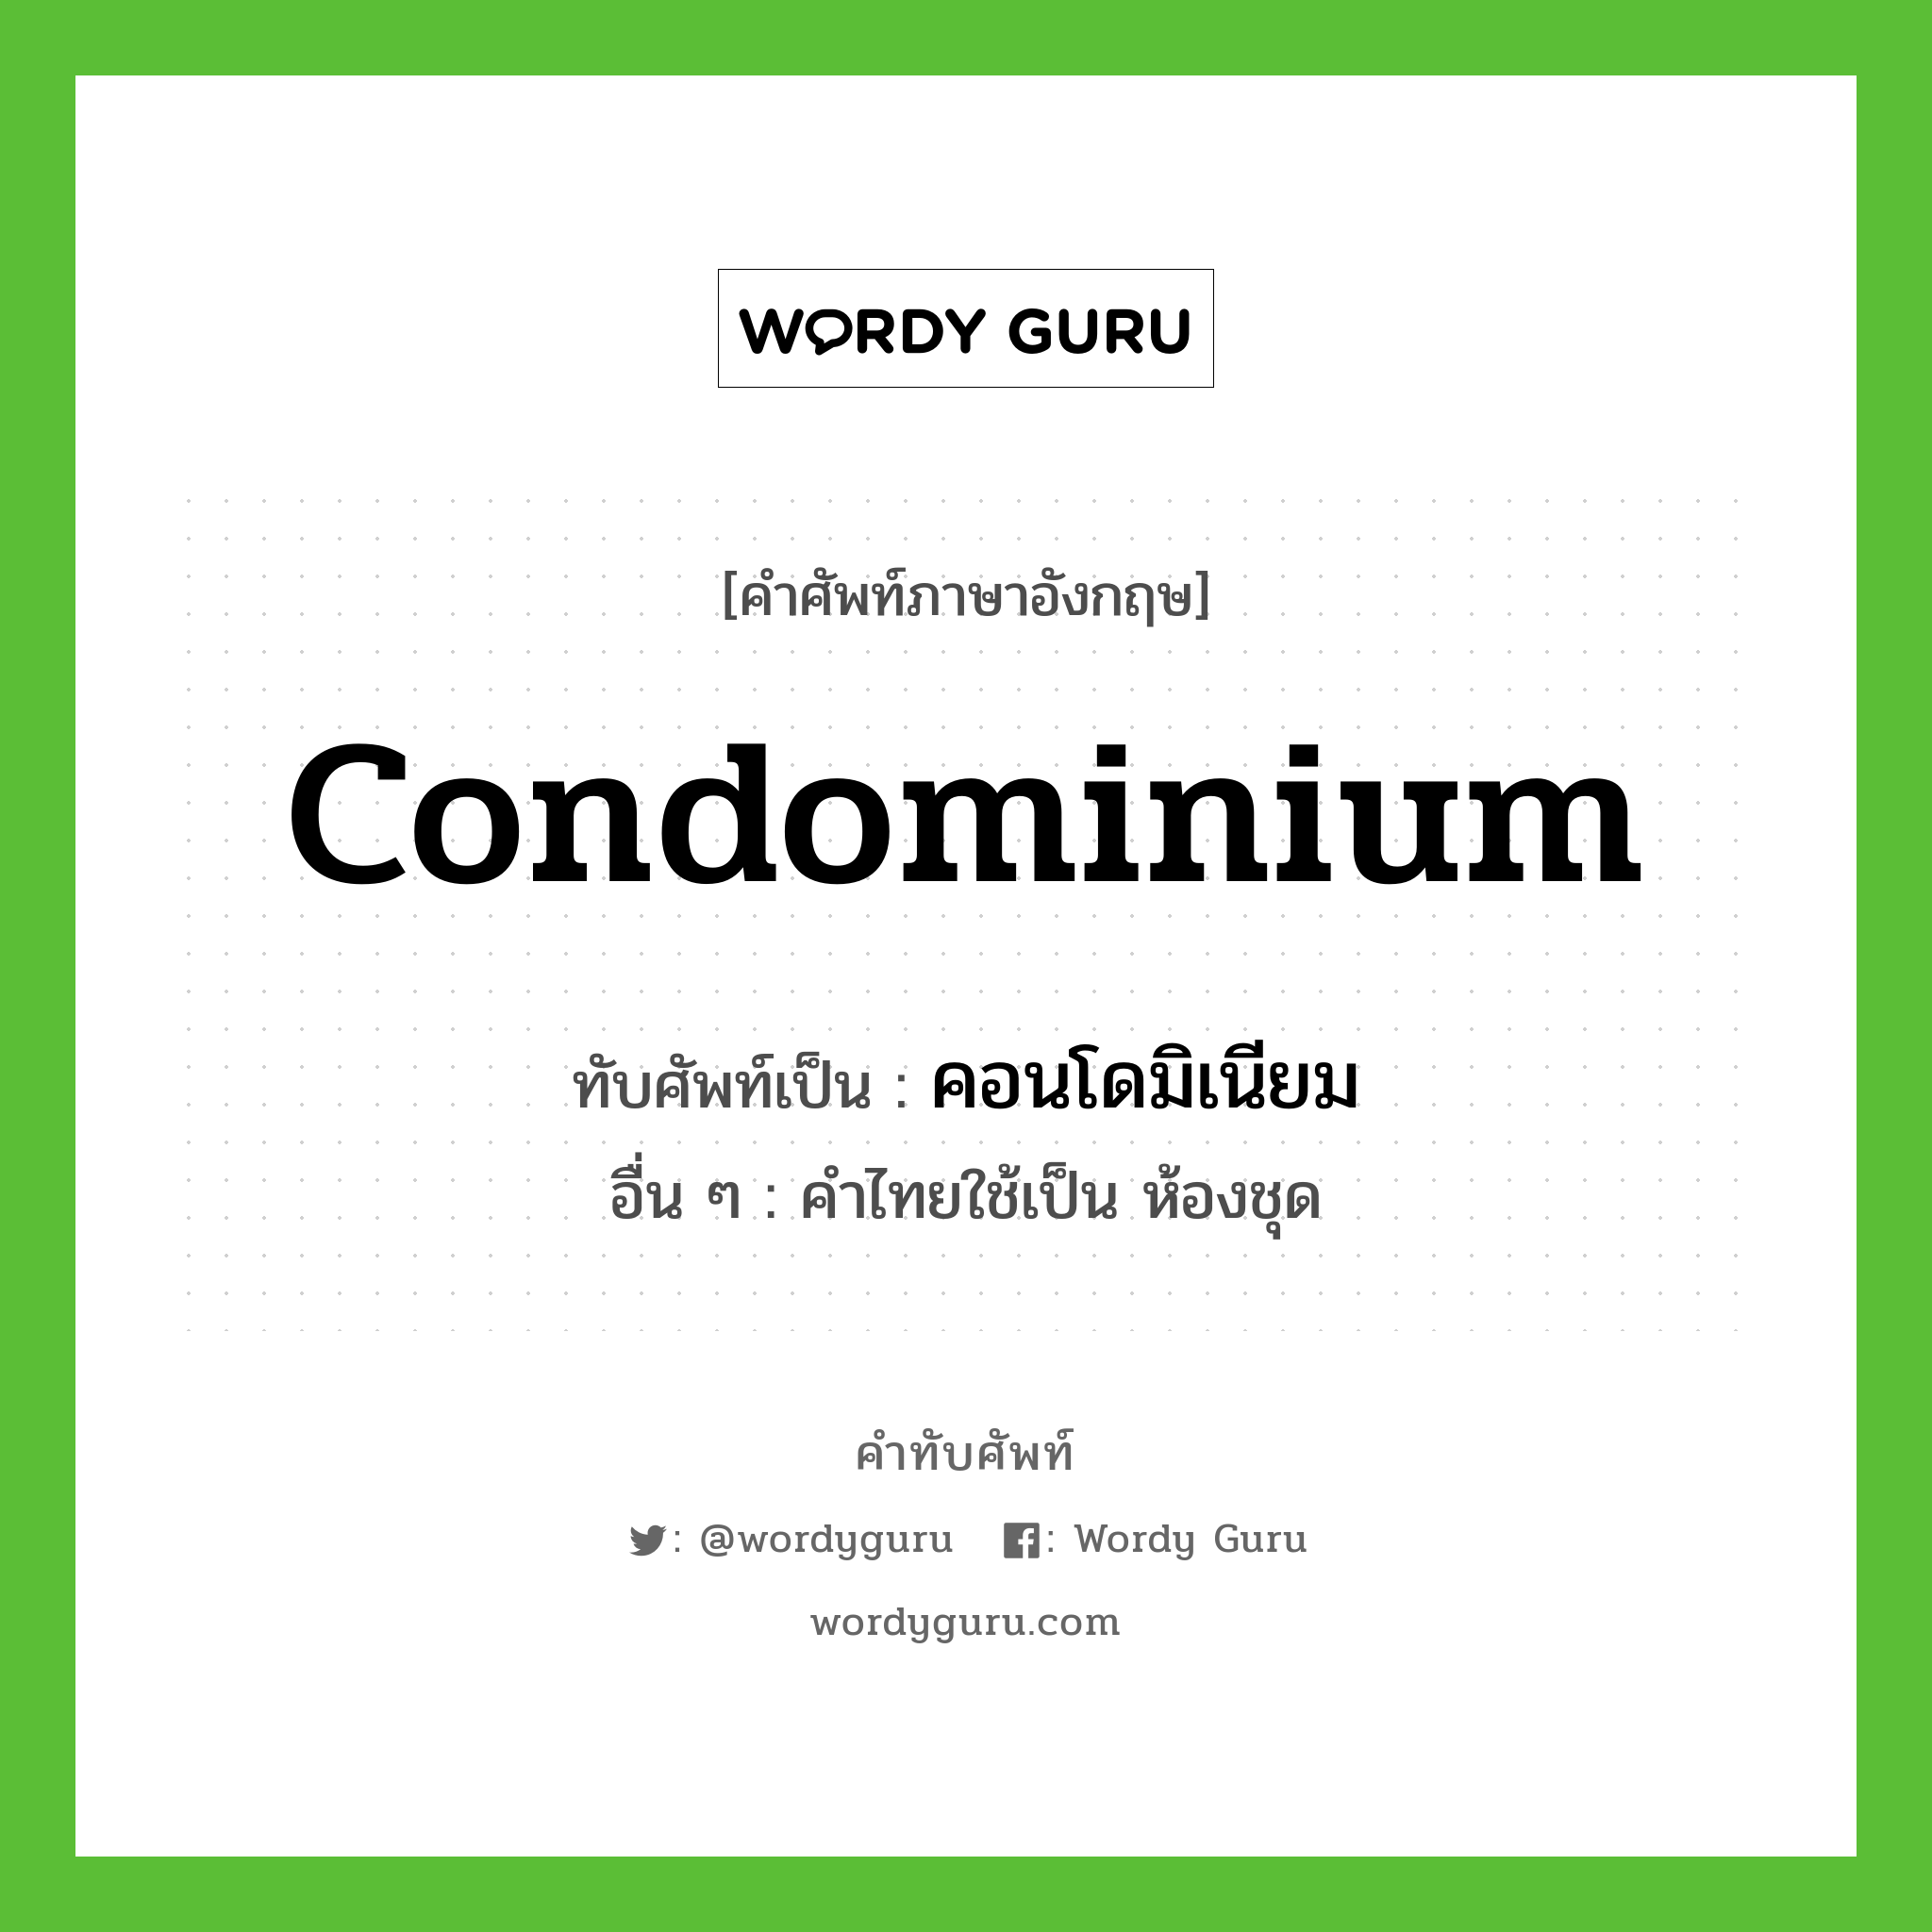 คอนโดมิเนียม เขียนอย่างไร?, คำศัพท์ภาษาอังกฤษ คอนโดมิเนียม ทับศัพท์เป็น condominium อื่น ๆ คำไทยใช้เป็น ห้องชุด